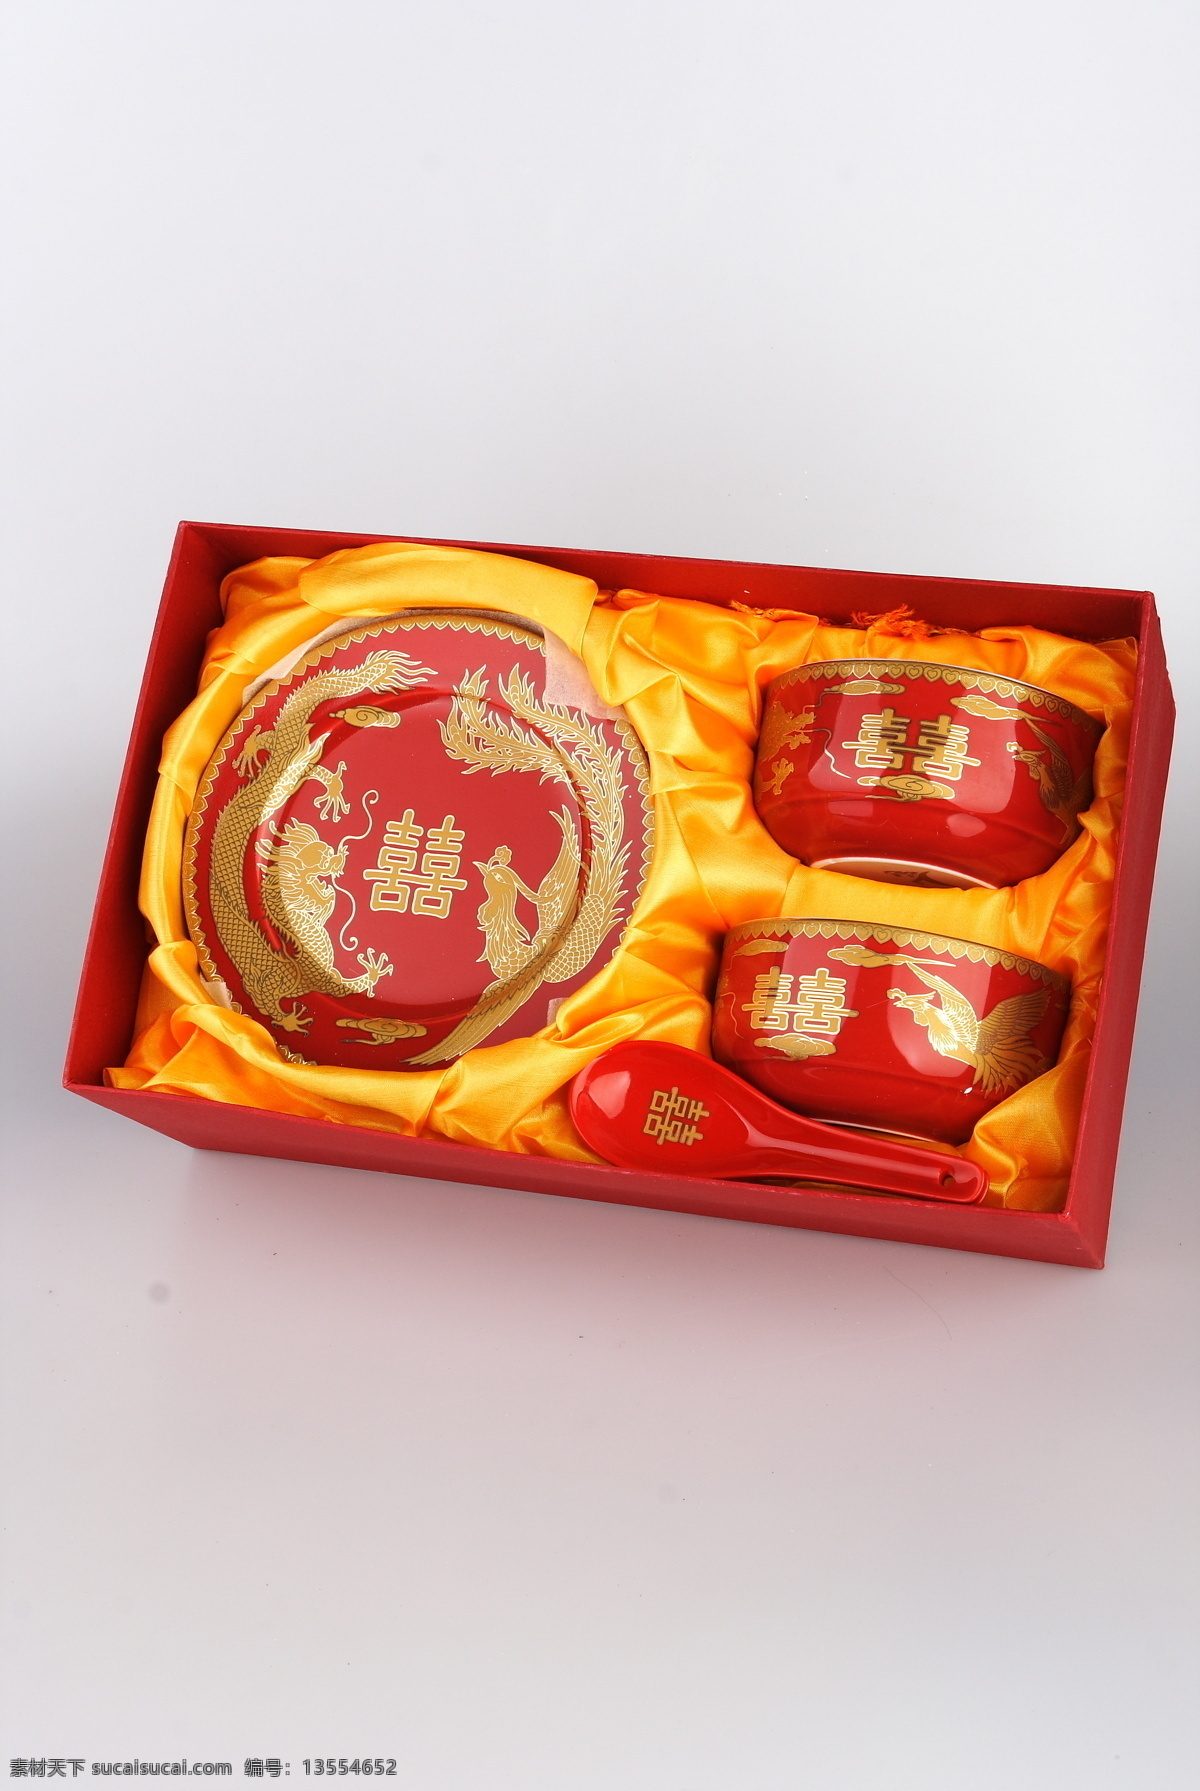 中国 红 釉 龙凤 碗 结婚 婚礼 婚庆用品 喜碗 龙凤对碗 生活百科 家居生活